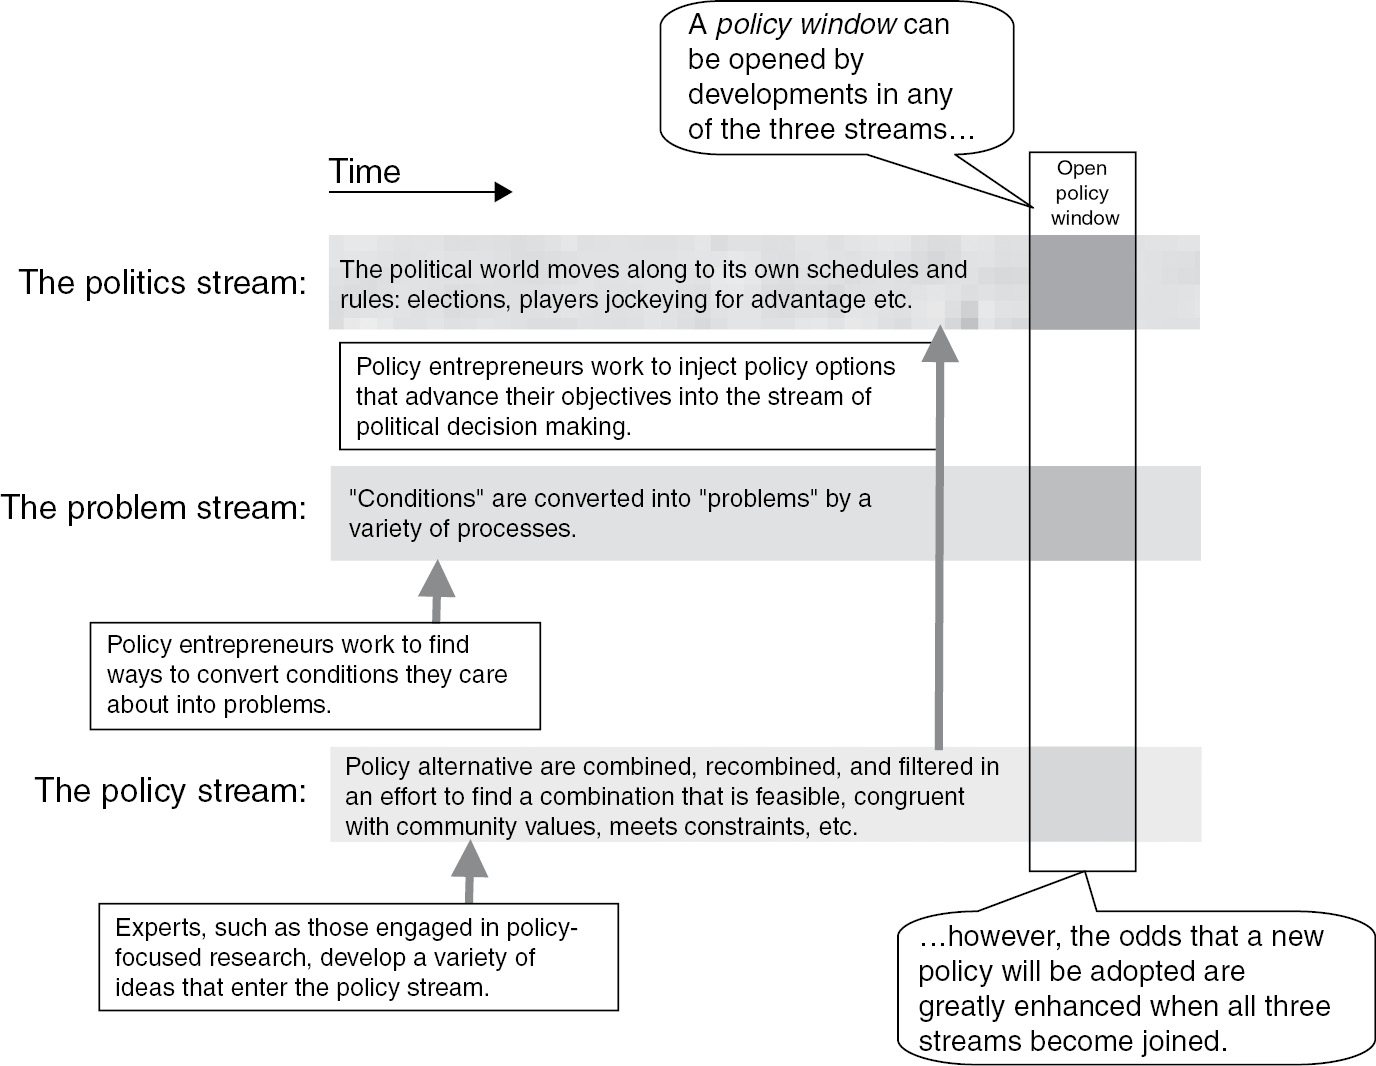 kingdon model of policy streams